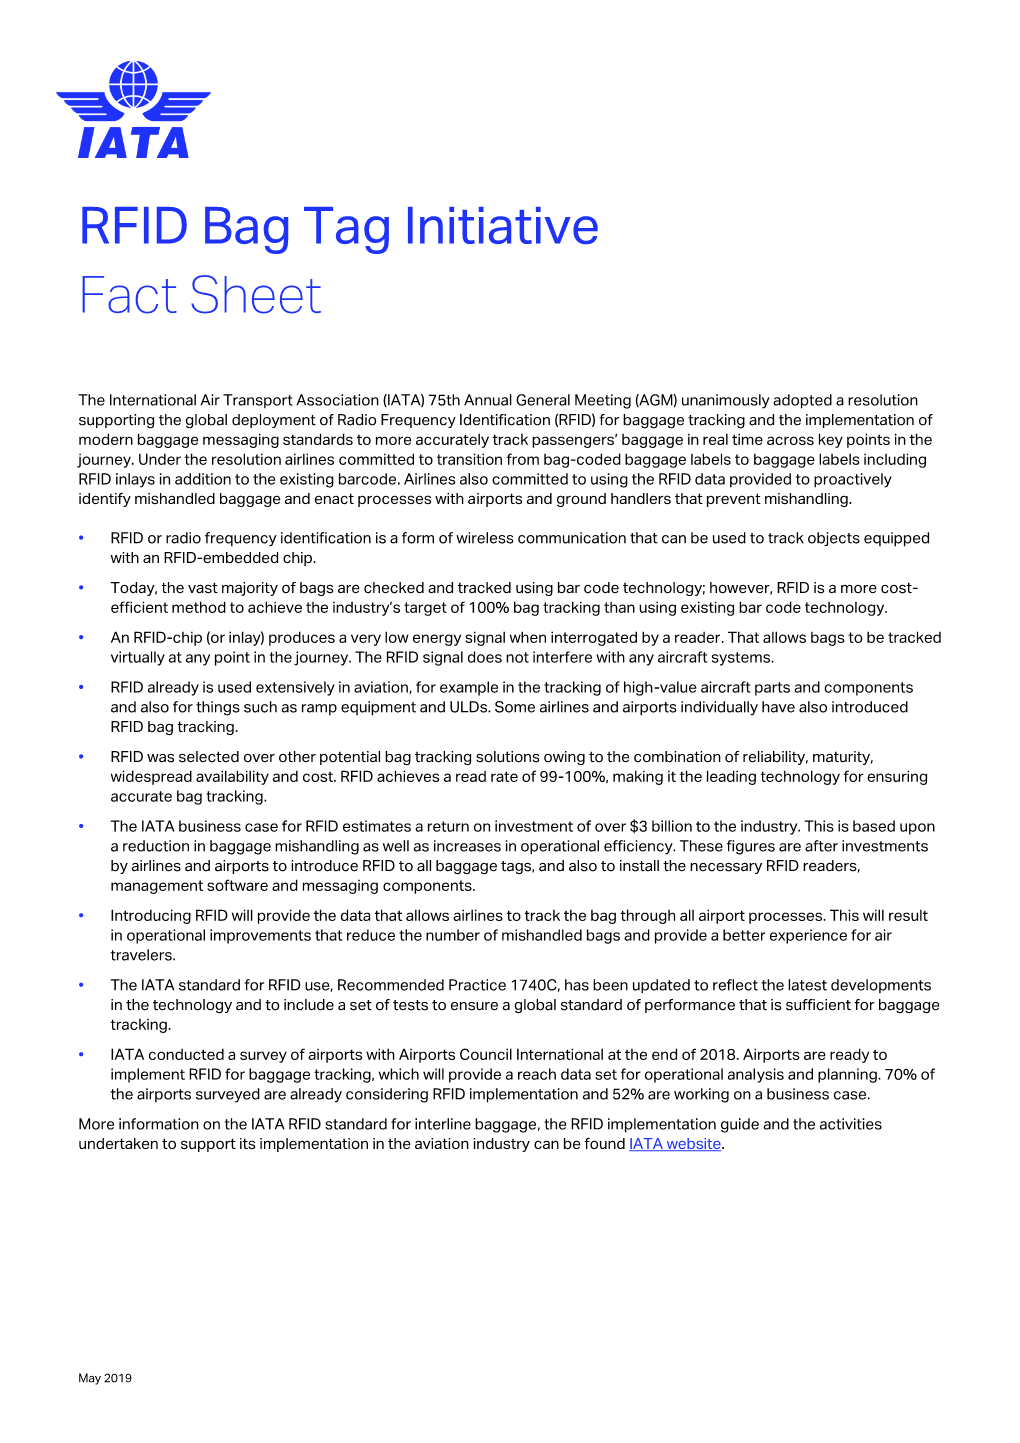 RFID Fact Sheet